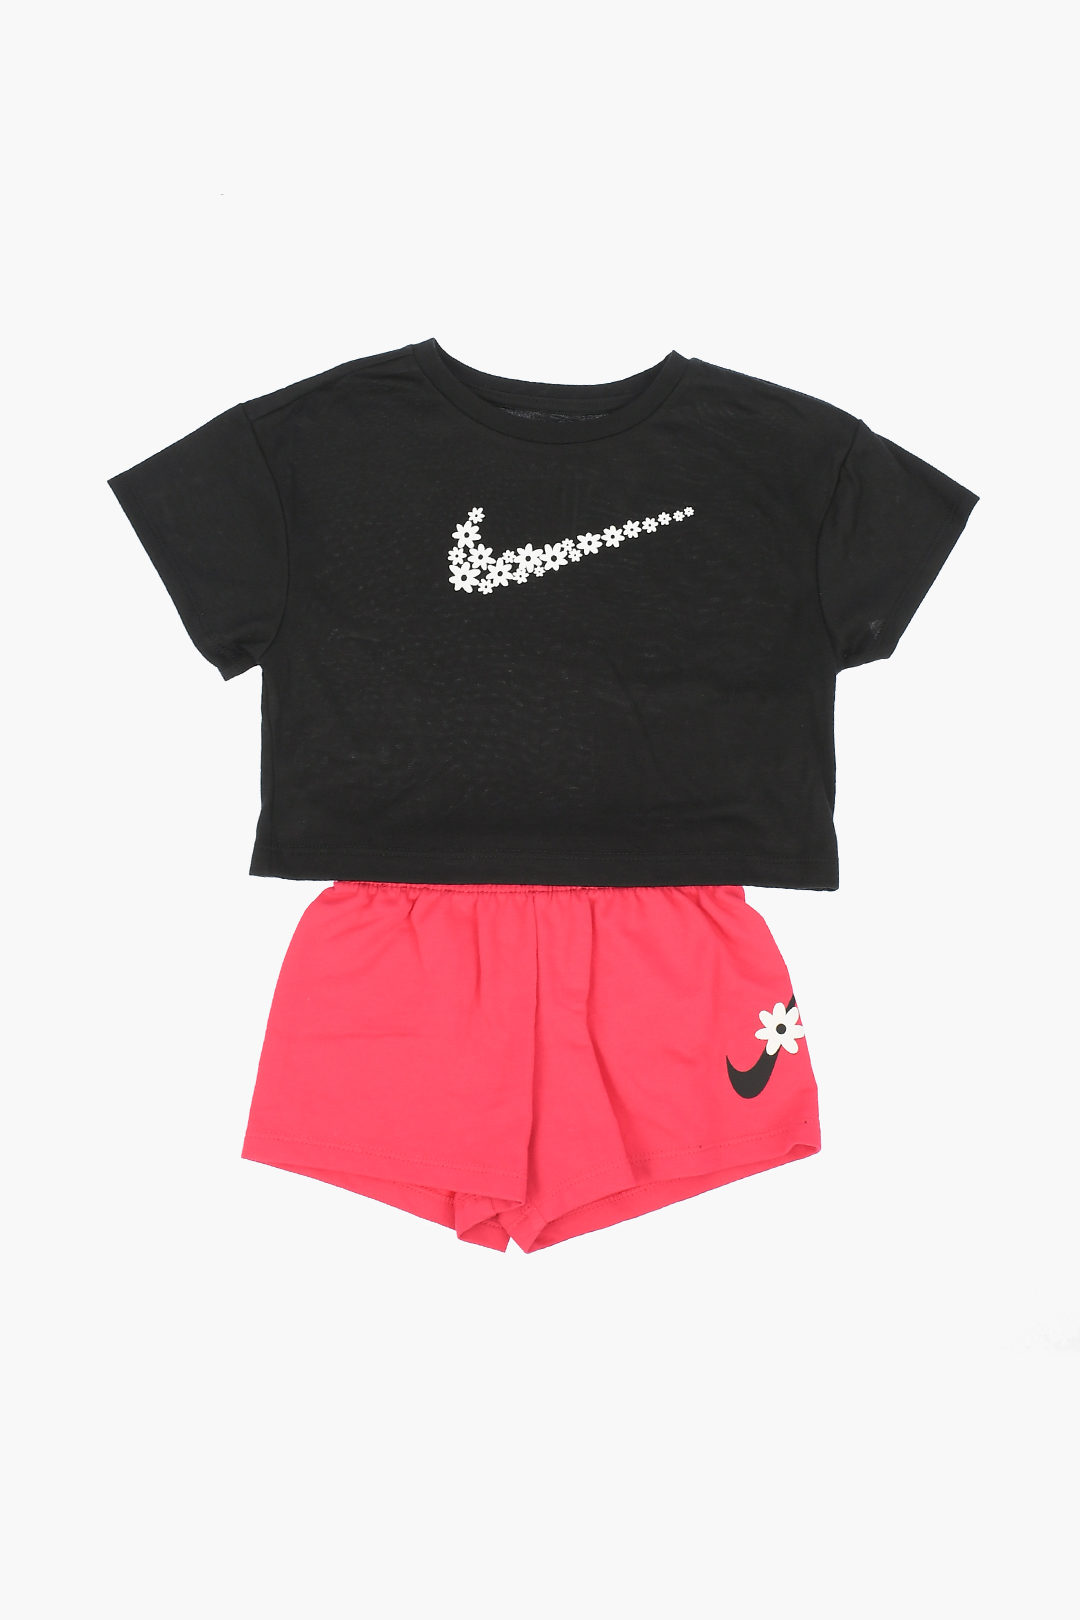 https://data.glamood.com/imgprodotto/t-shirt-and-shorts-sport-daisy-set_1184540_zoom.jpg